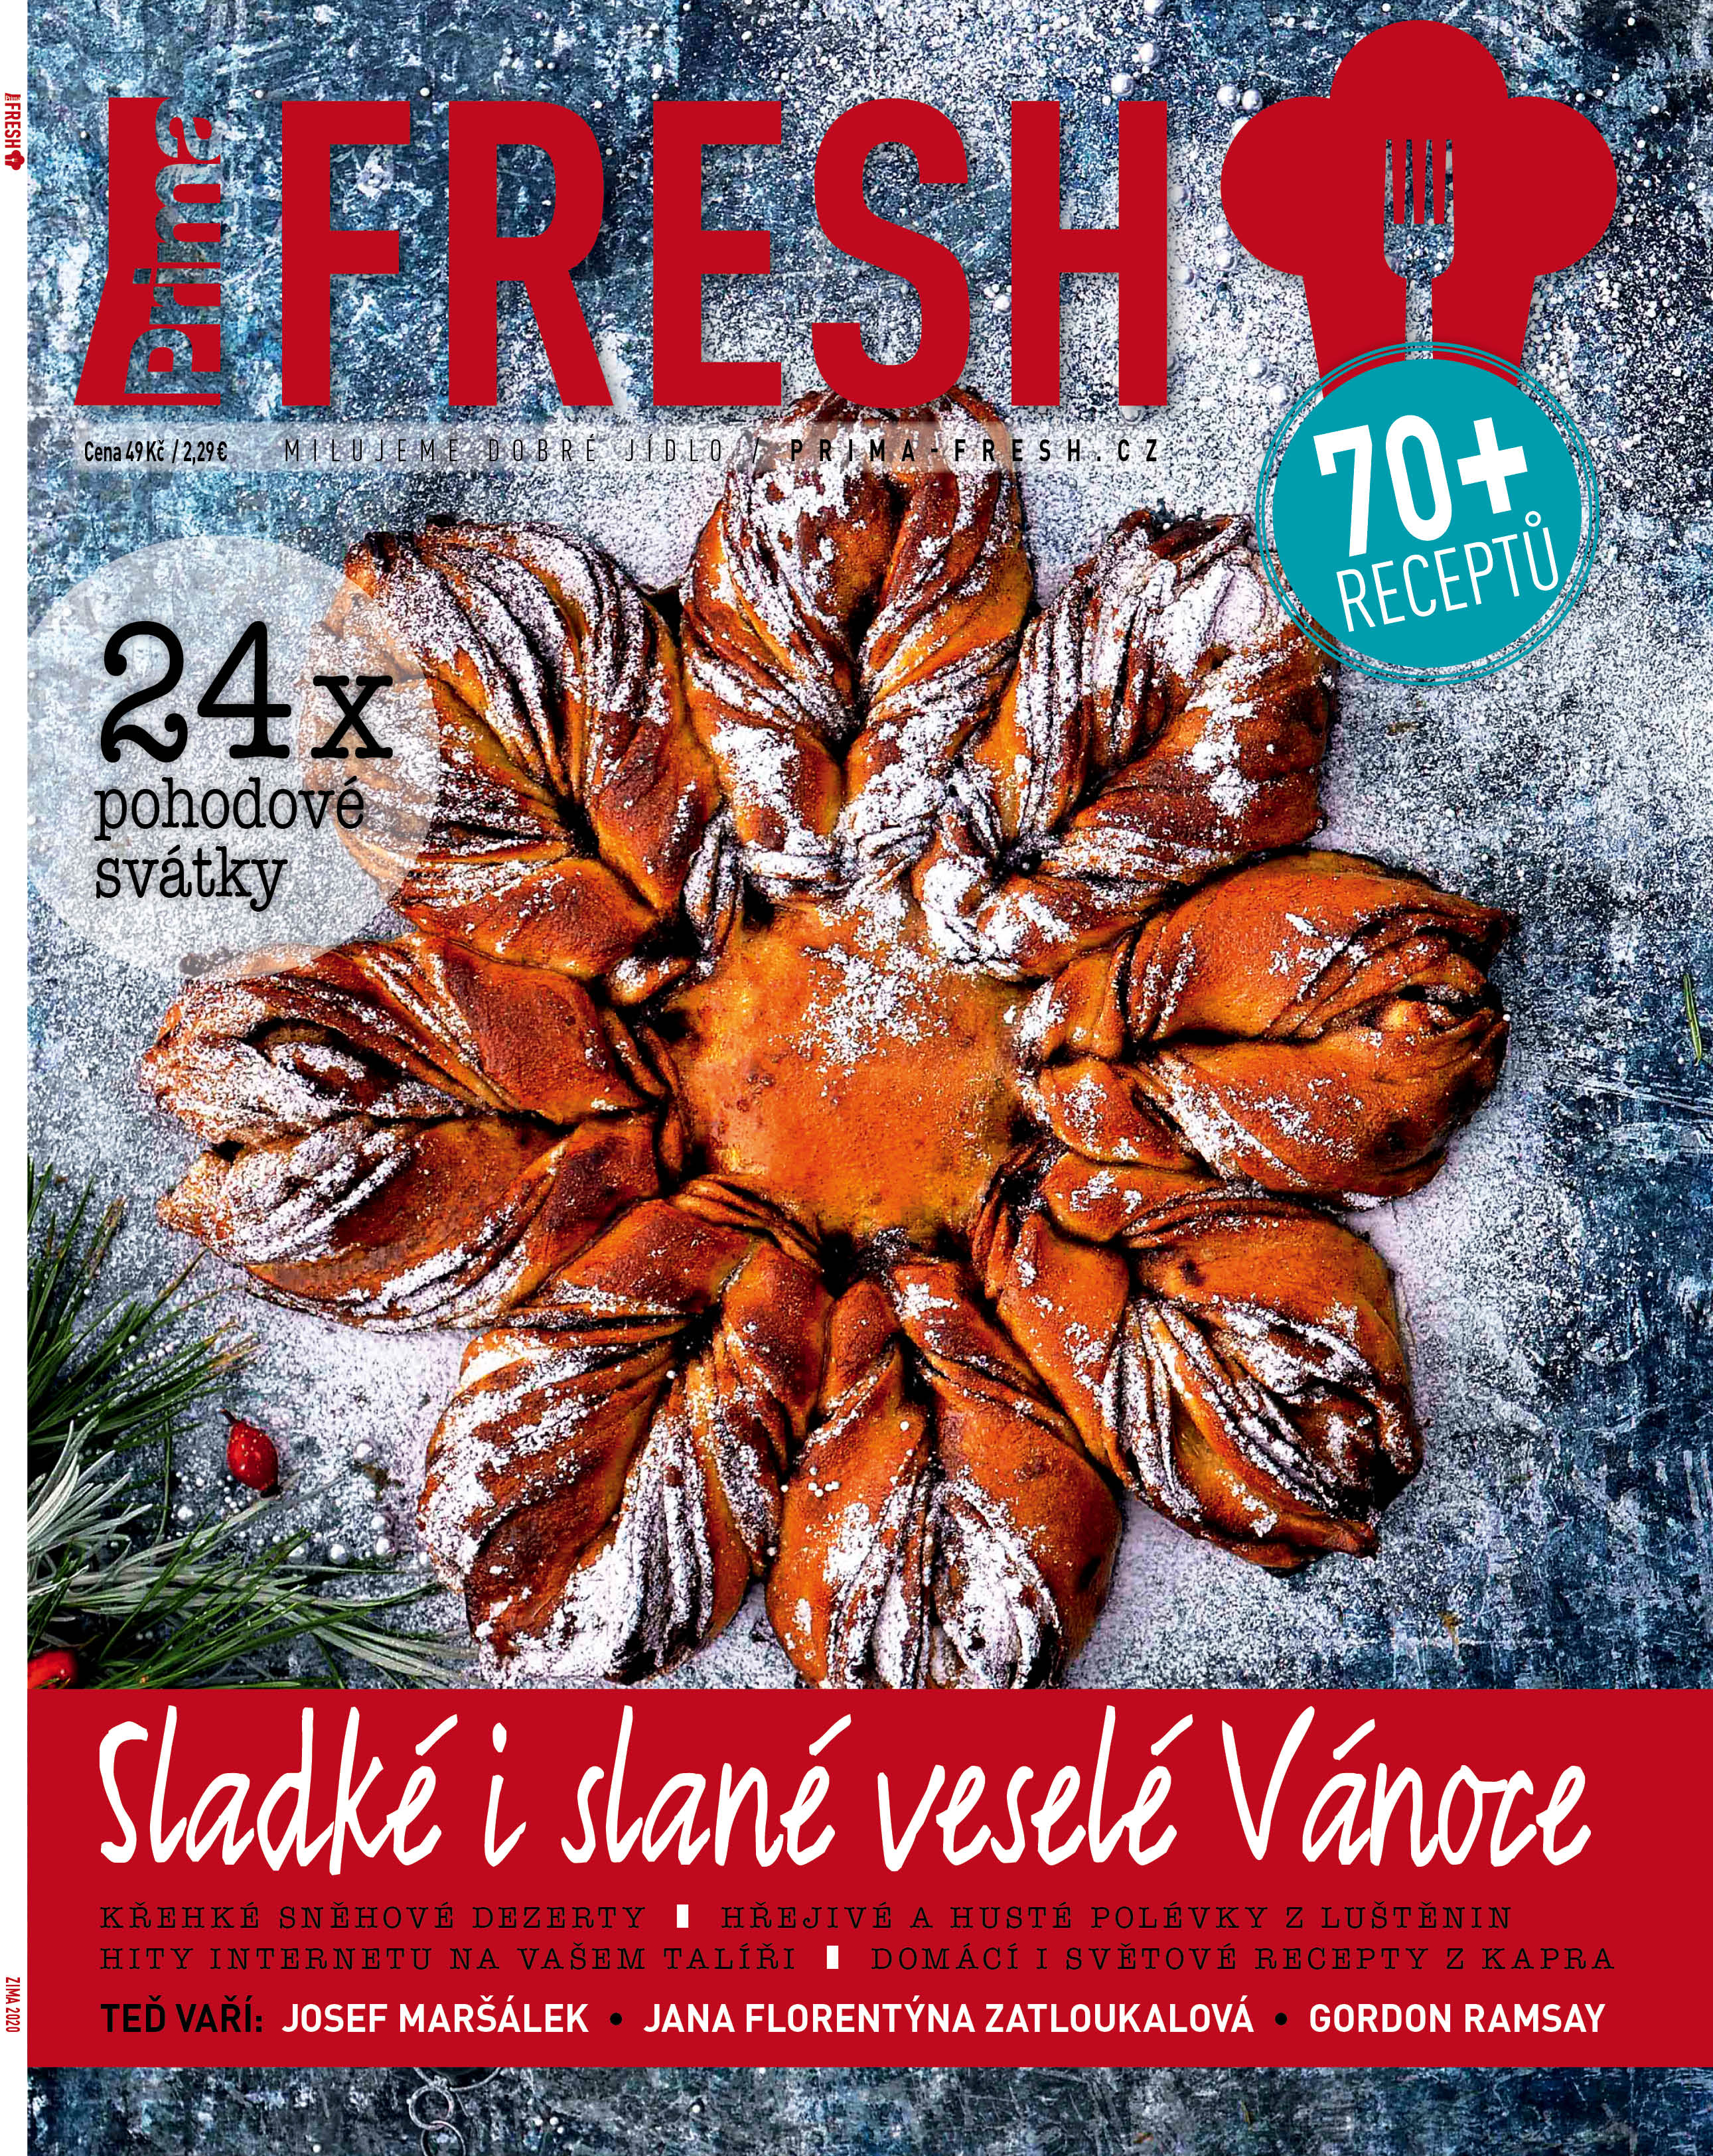 Časopis Prima FRESH & Vánoce